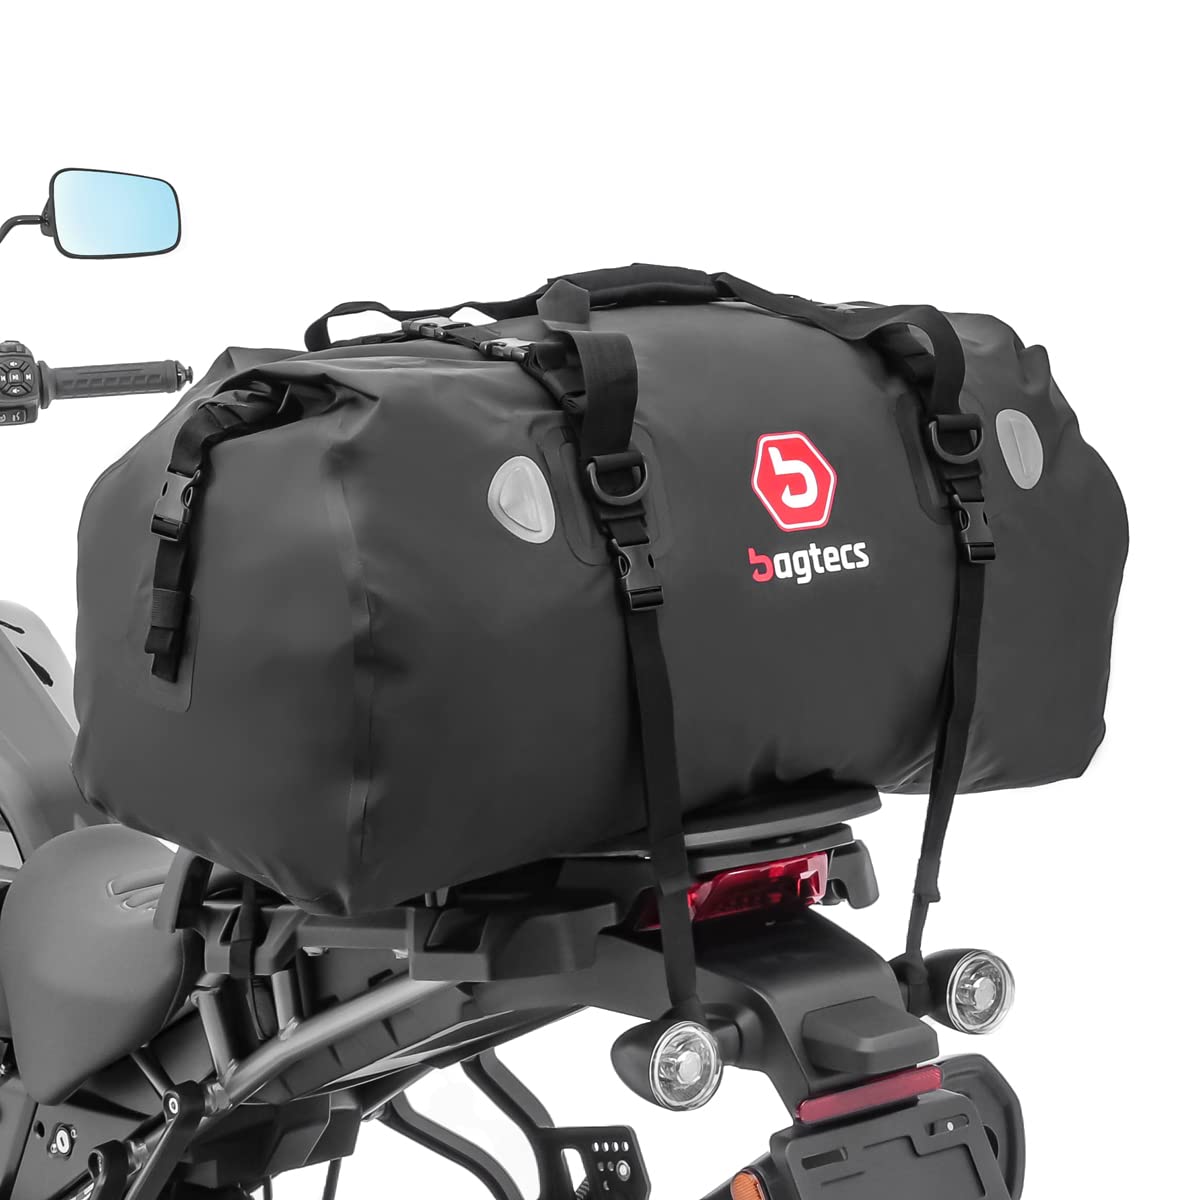 Motorrad Hecktasche für Drybag Bagtecs XF80 Wasserdicht Volumen 80l von Bagtecs